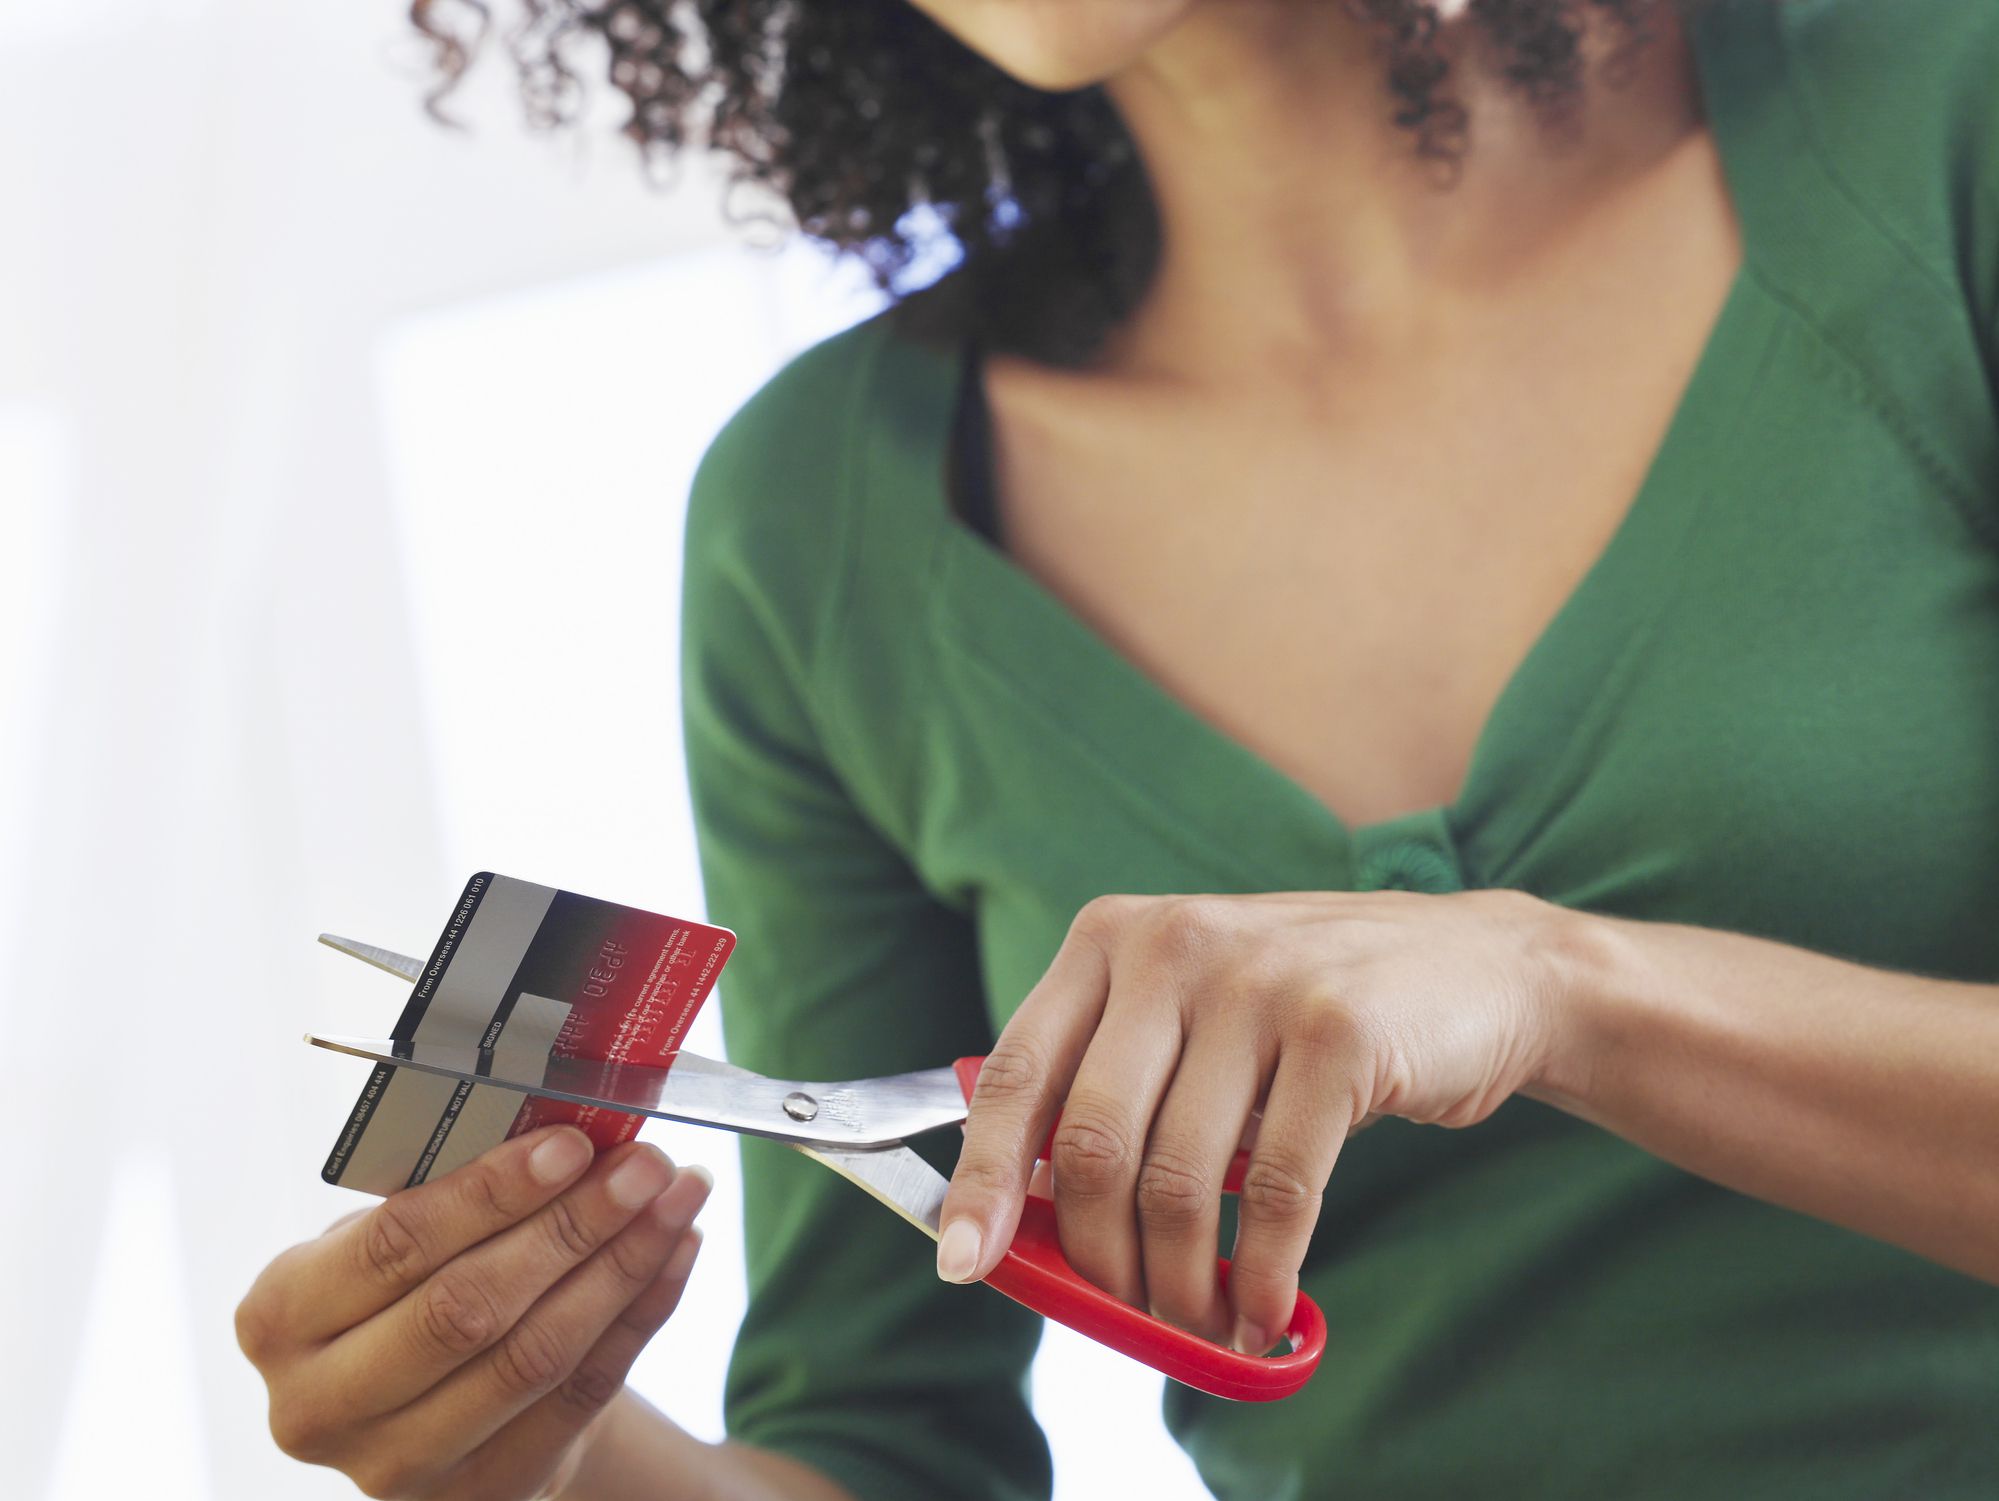 Свободен от долгов. Разрезанная банковская карта. Женщина с кредитной картой. Картинка порезанная кредитная карта. Человек с кредиткой картинки.